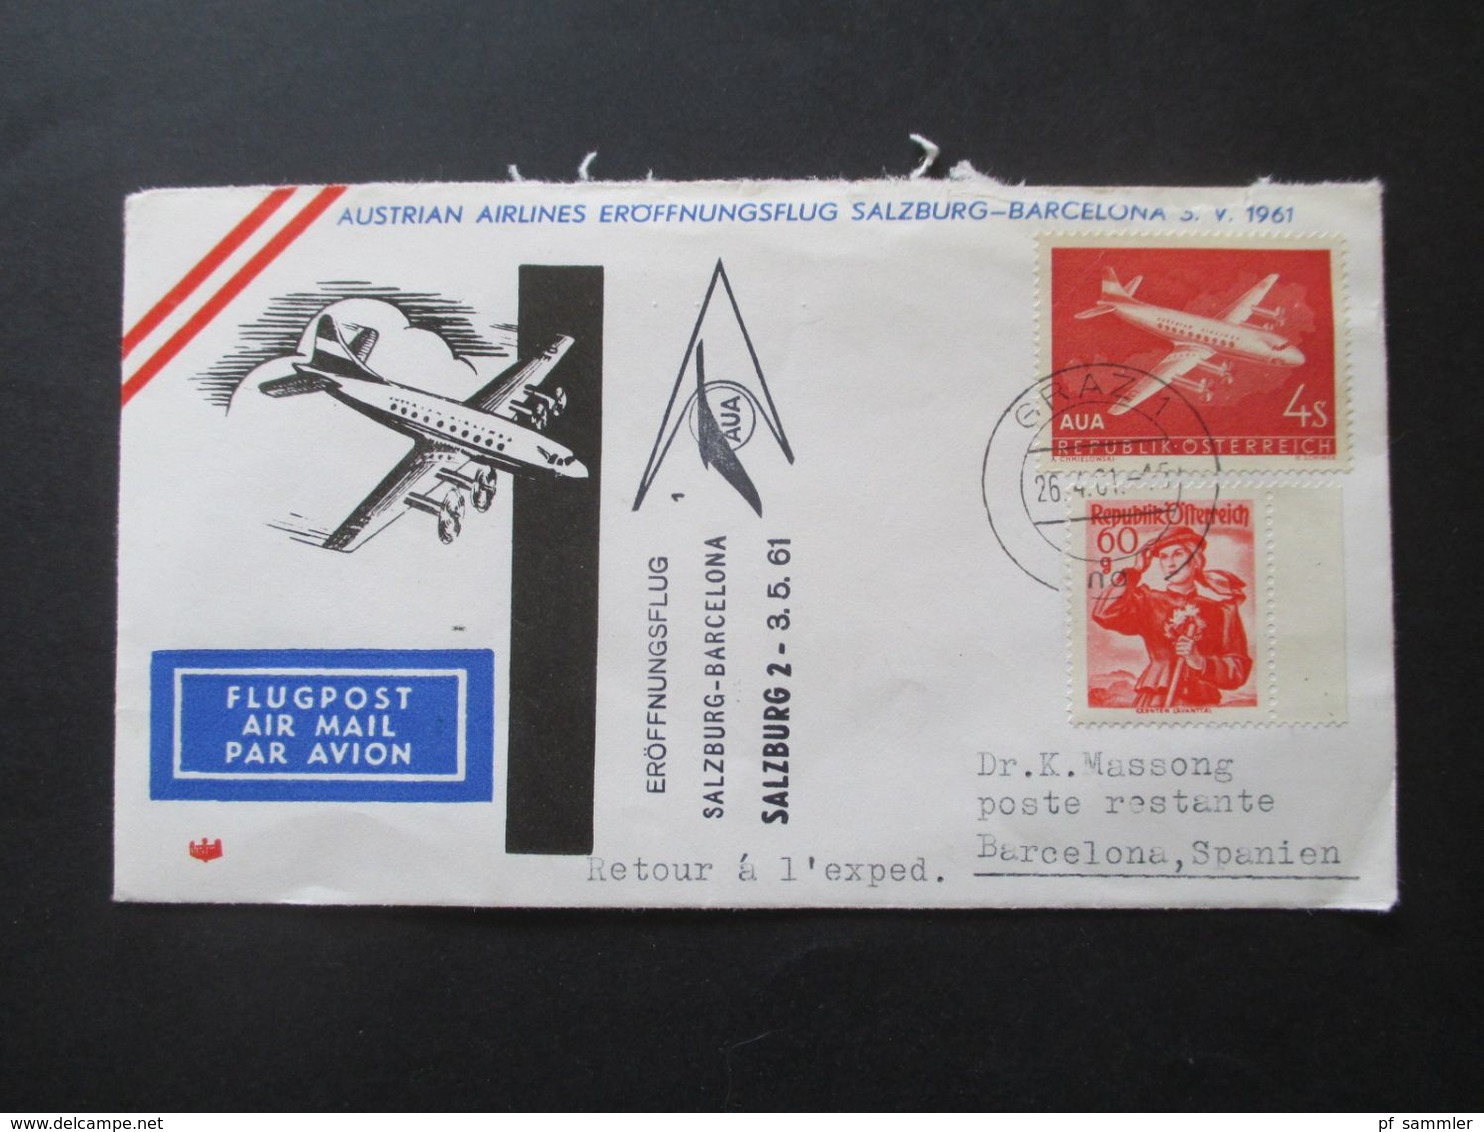 Österreich 1960 / 61 AUA Erstflüge 9 Belege + 1x Luposta Sternflug. Flugpost Belege / Poste Restante - Covers & Documents